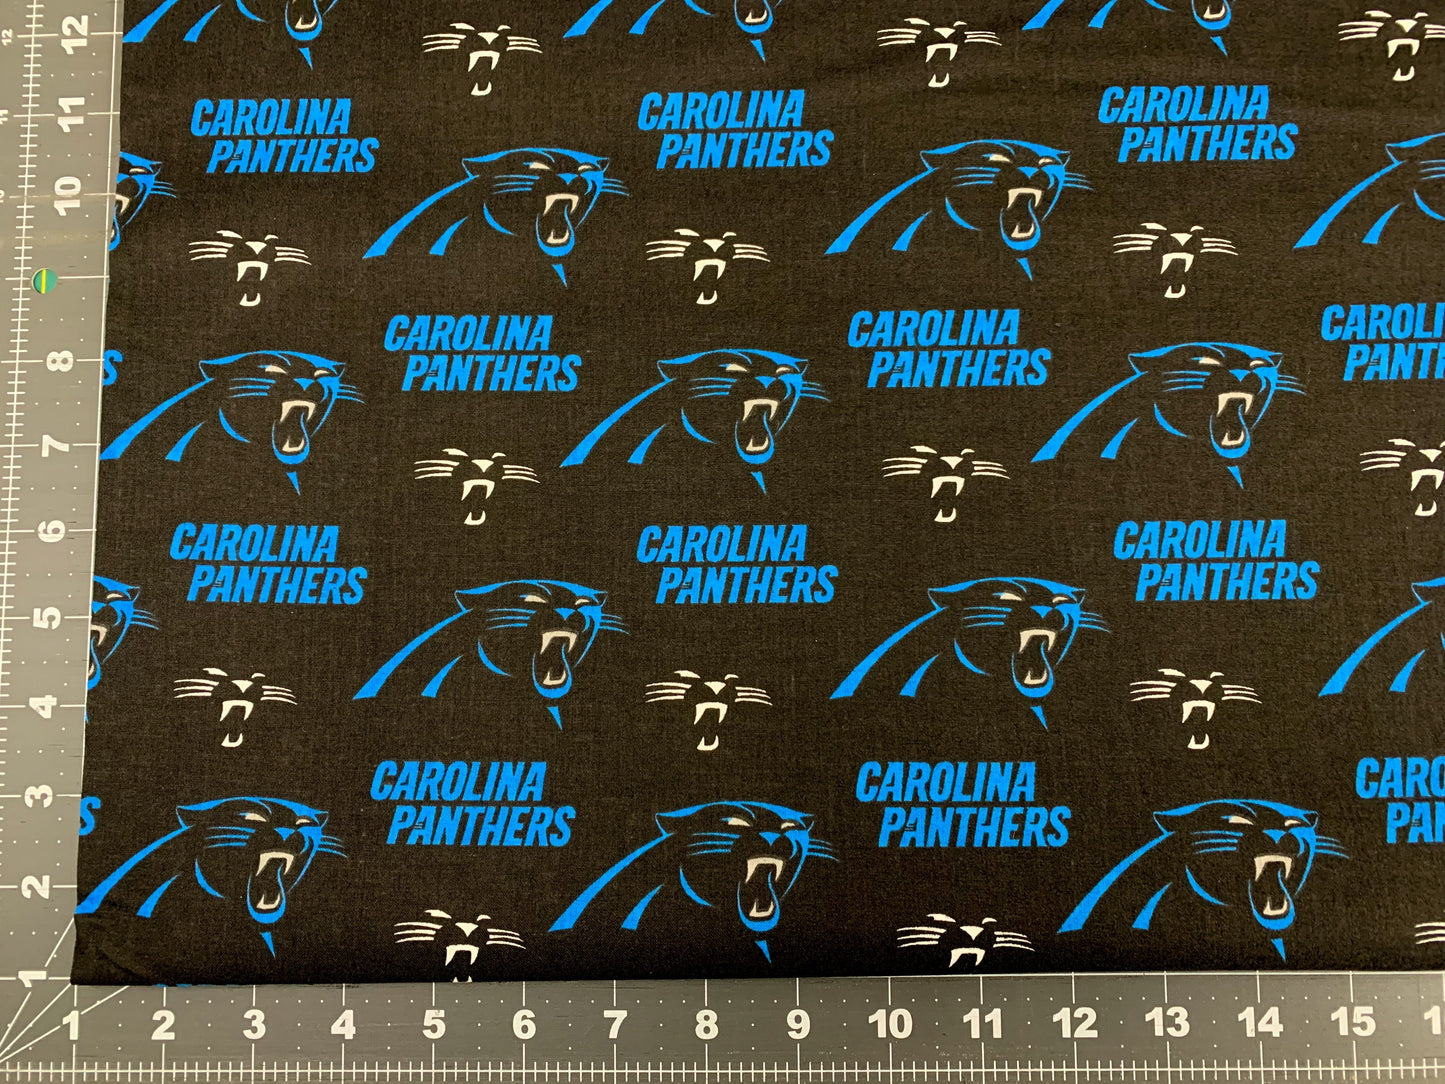 Carolina Panthers fabric 6401D NFL fabric Panther cotton fabric